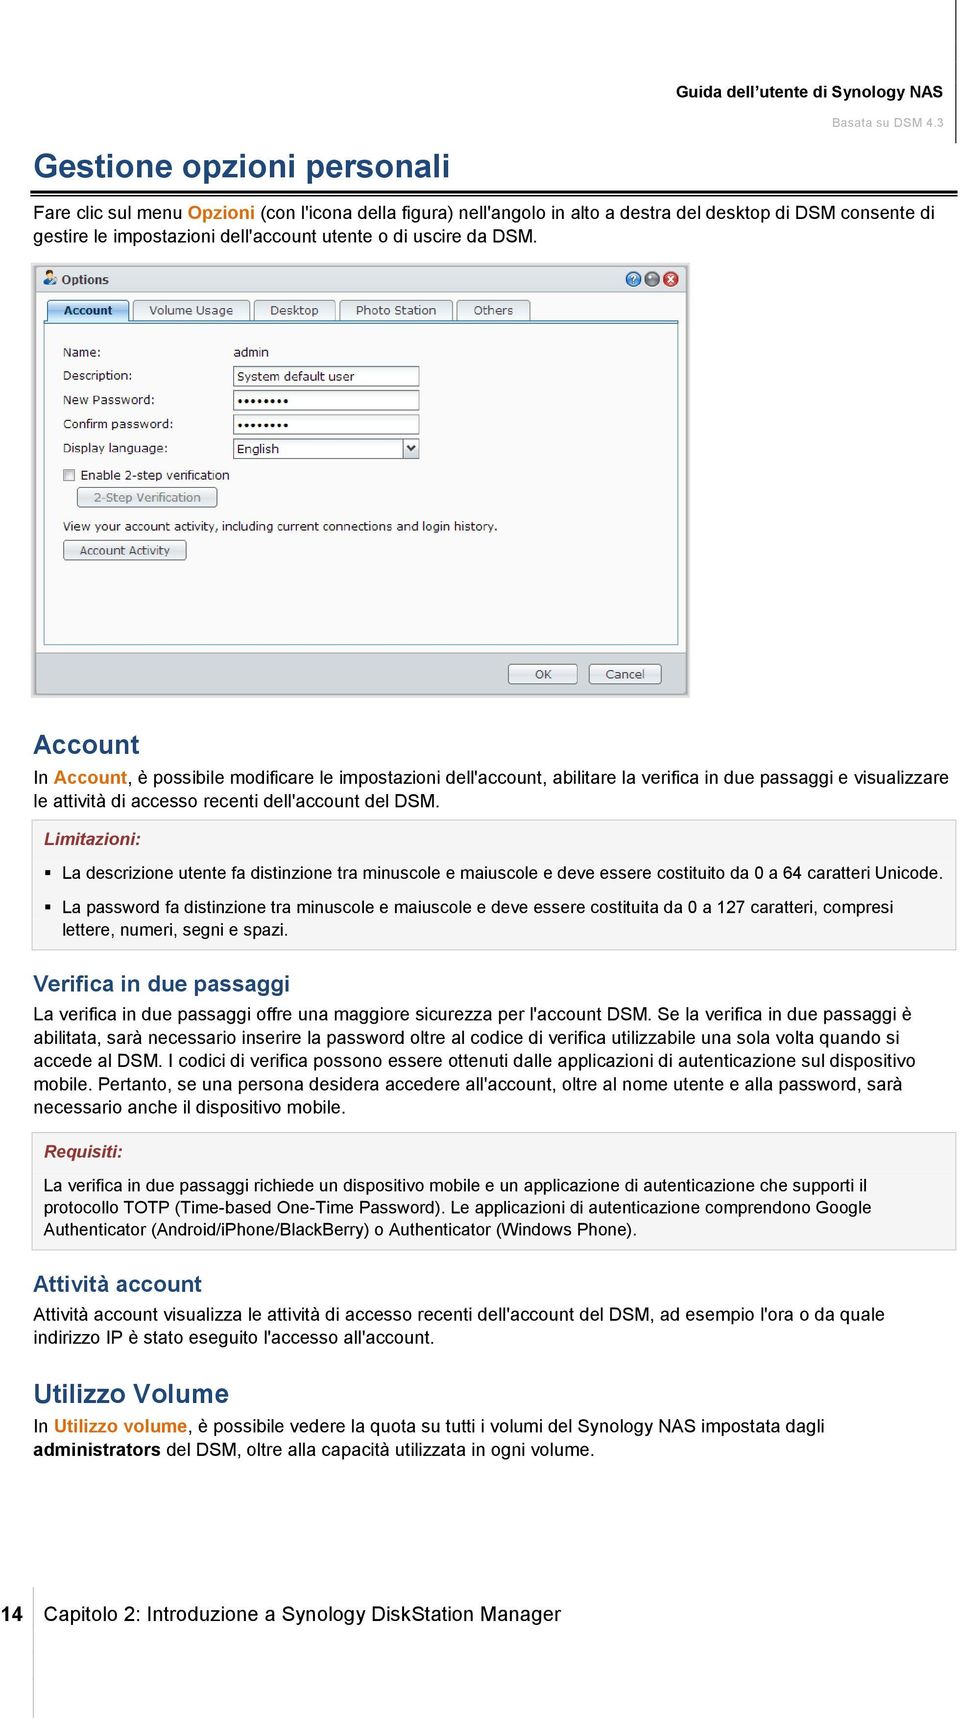 Account In Account, è possibile modificare le impostazioni dell'account, abilitare la verifica in due passaggi e visualizzare le attività di accesso recenti dell'account del DSM.